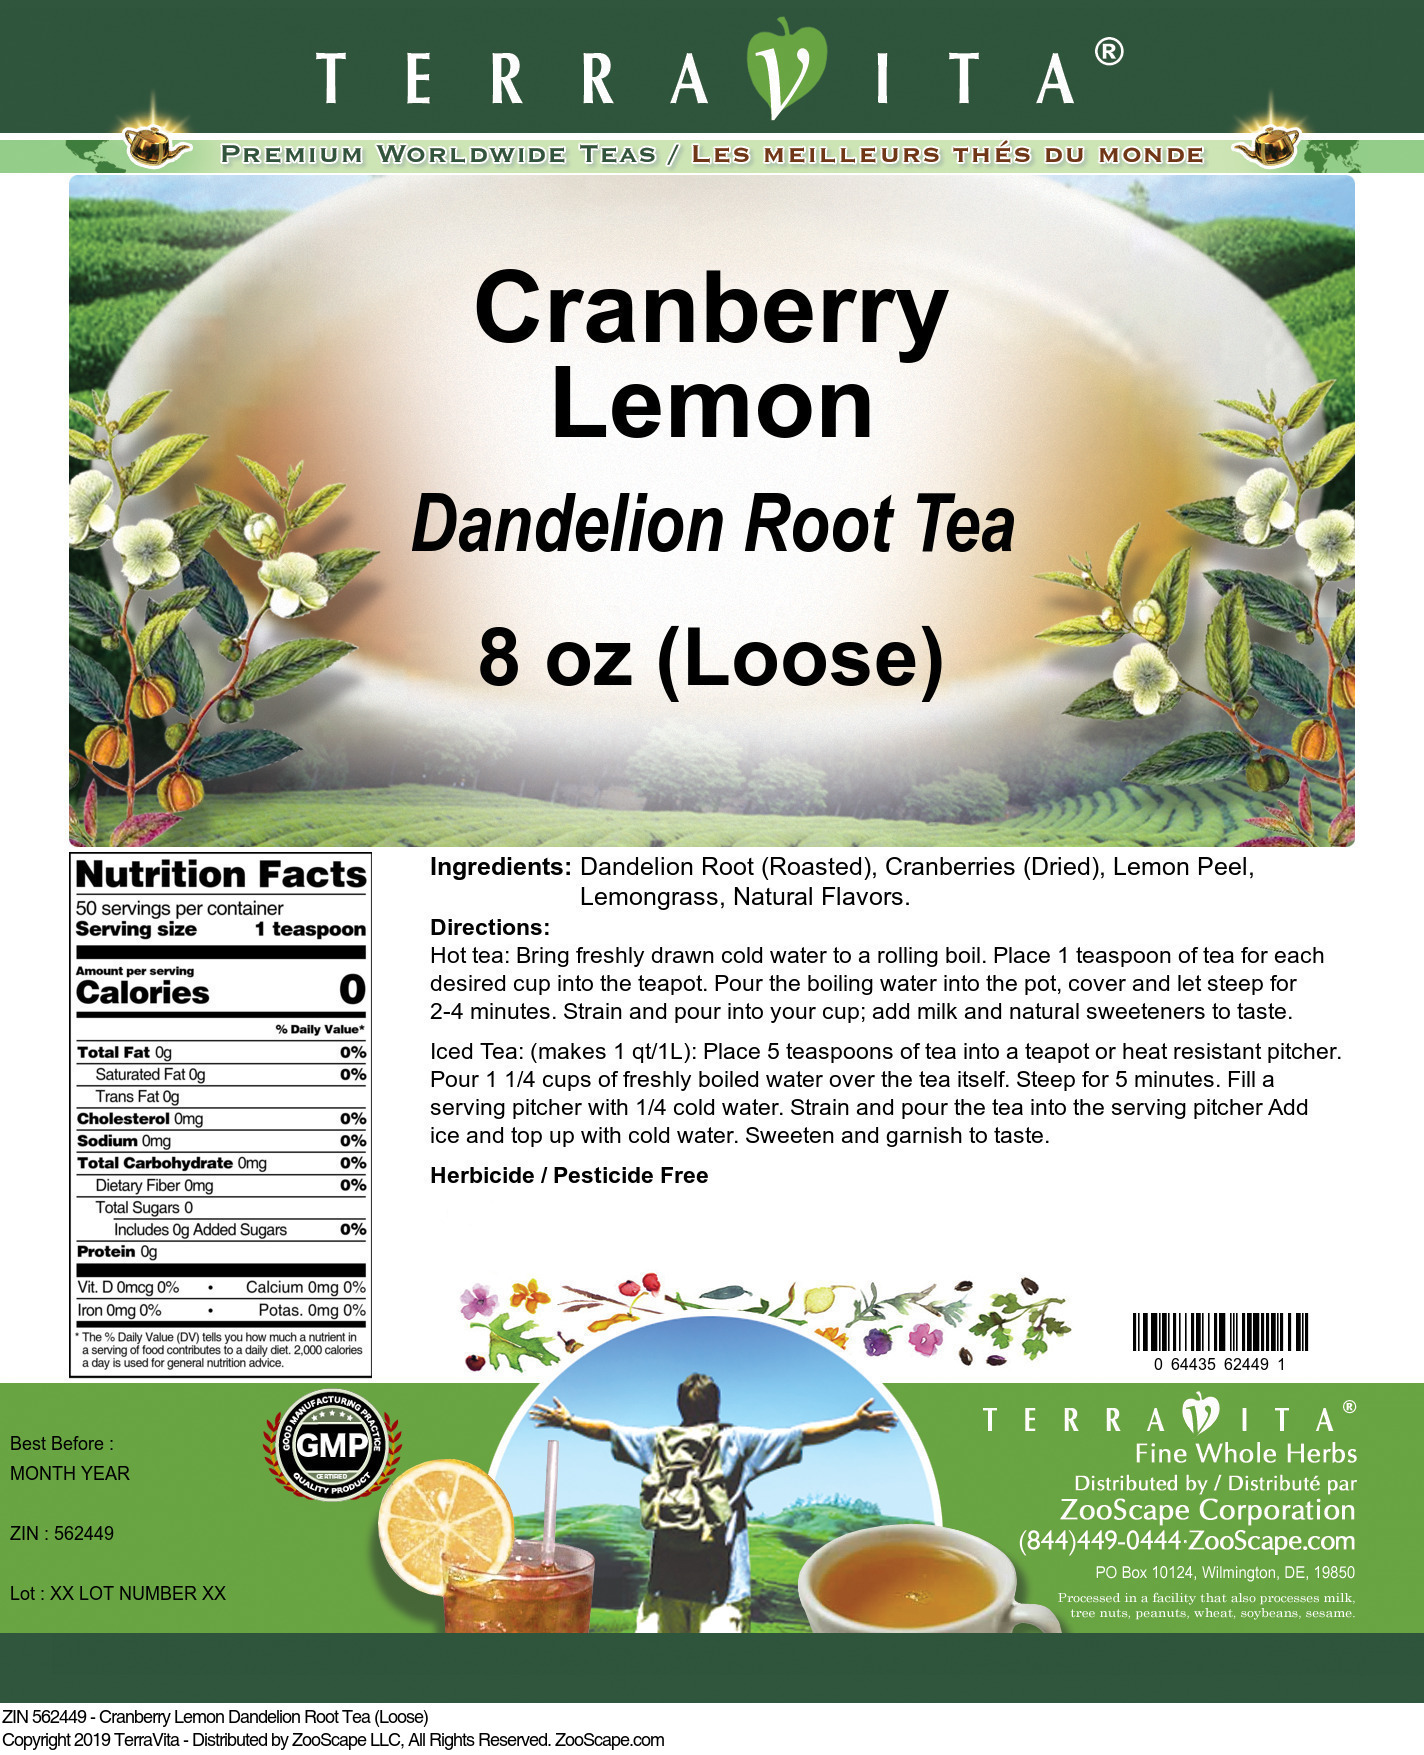 Cranberry Lemon Dandelion Root Tea (Loose) - Label